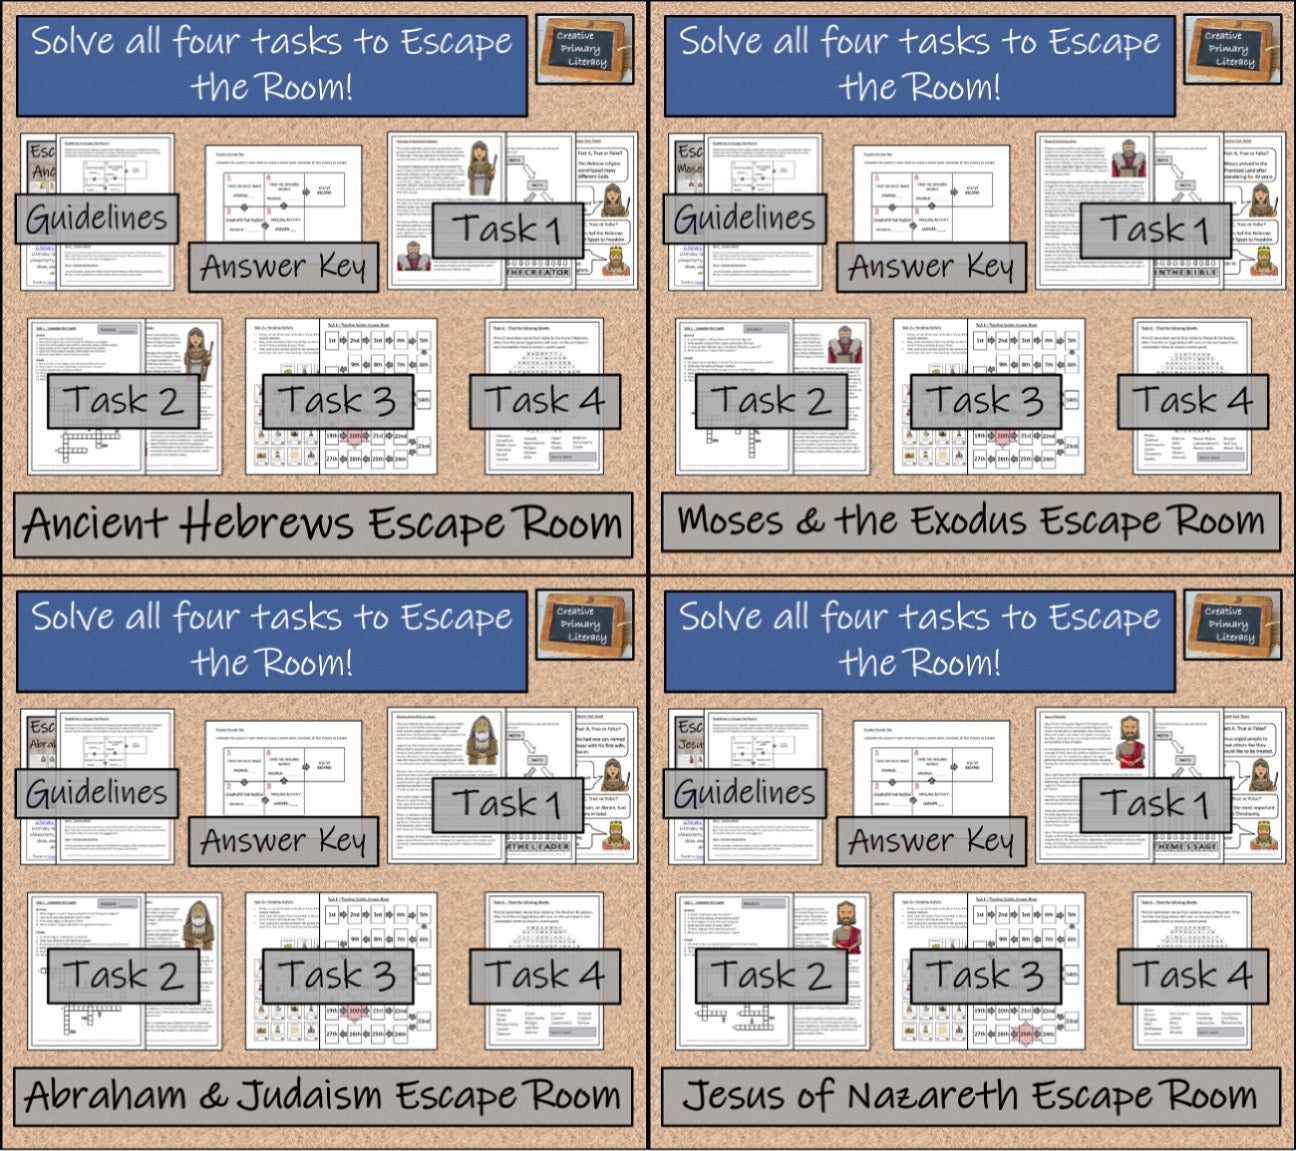 Ancient History Escape Room Mega Bundle | Volume 2 | 5th & 6th Grade